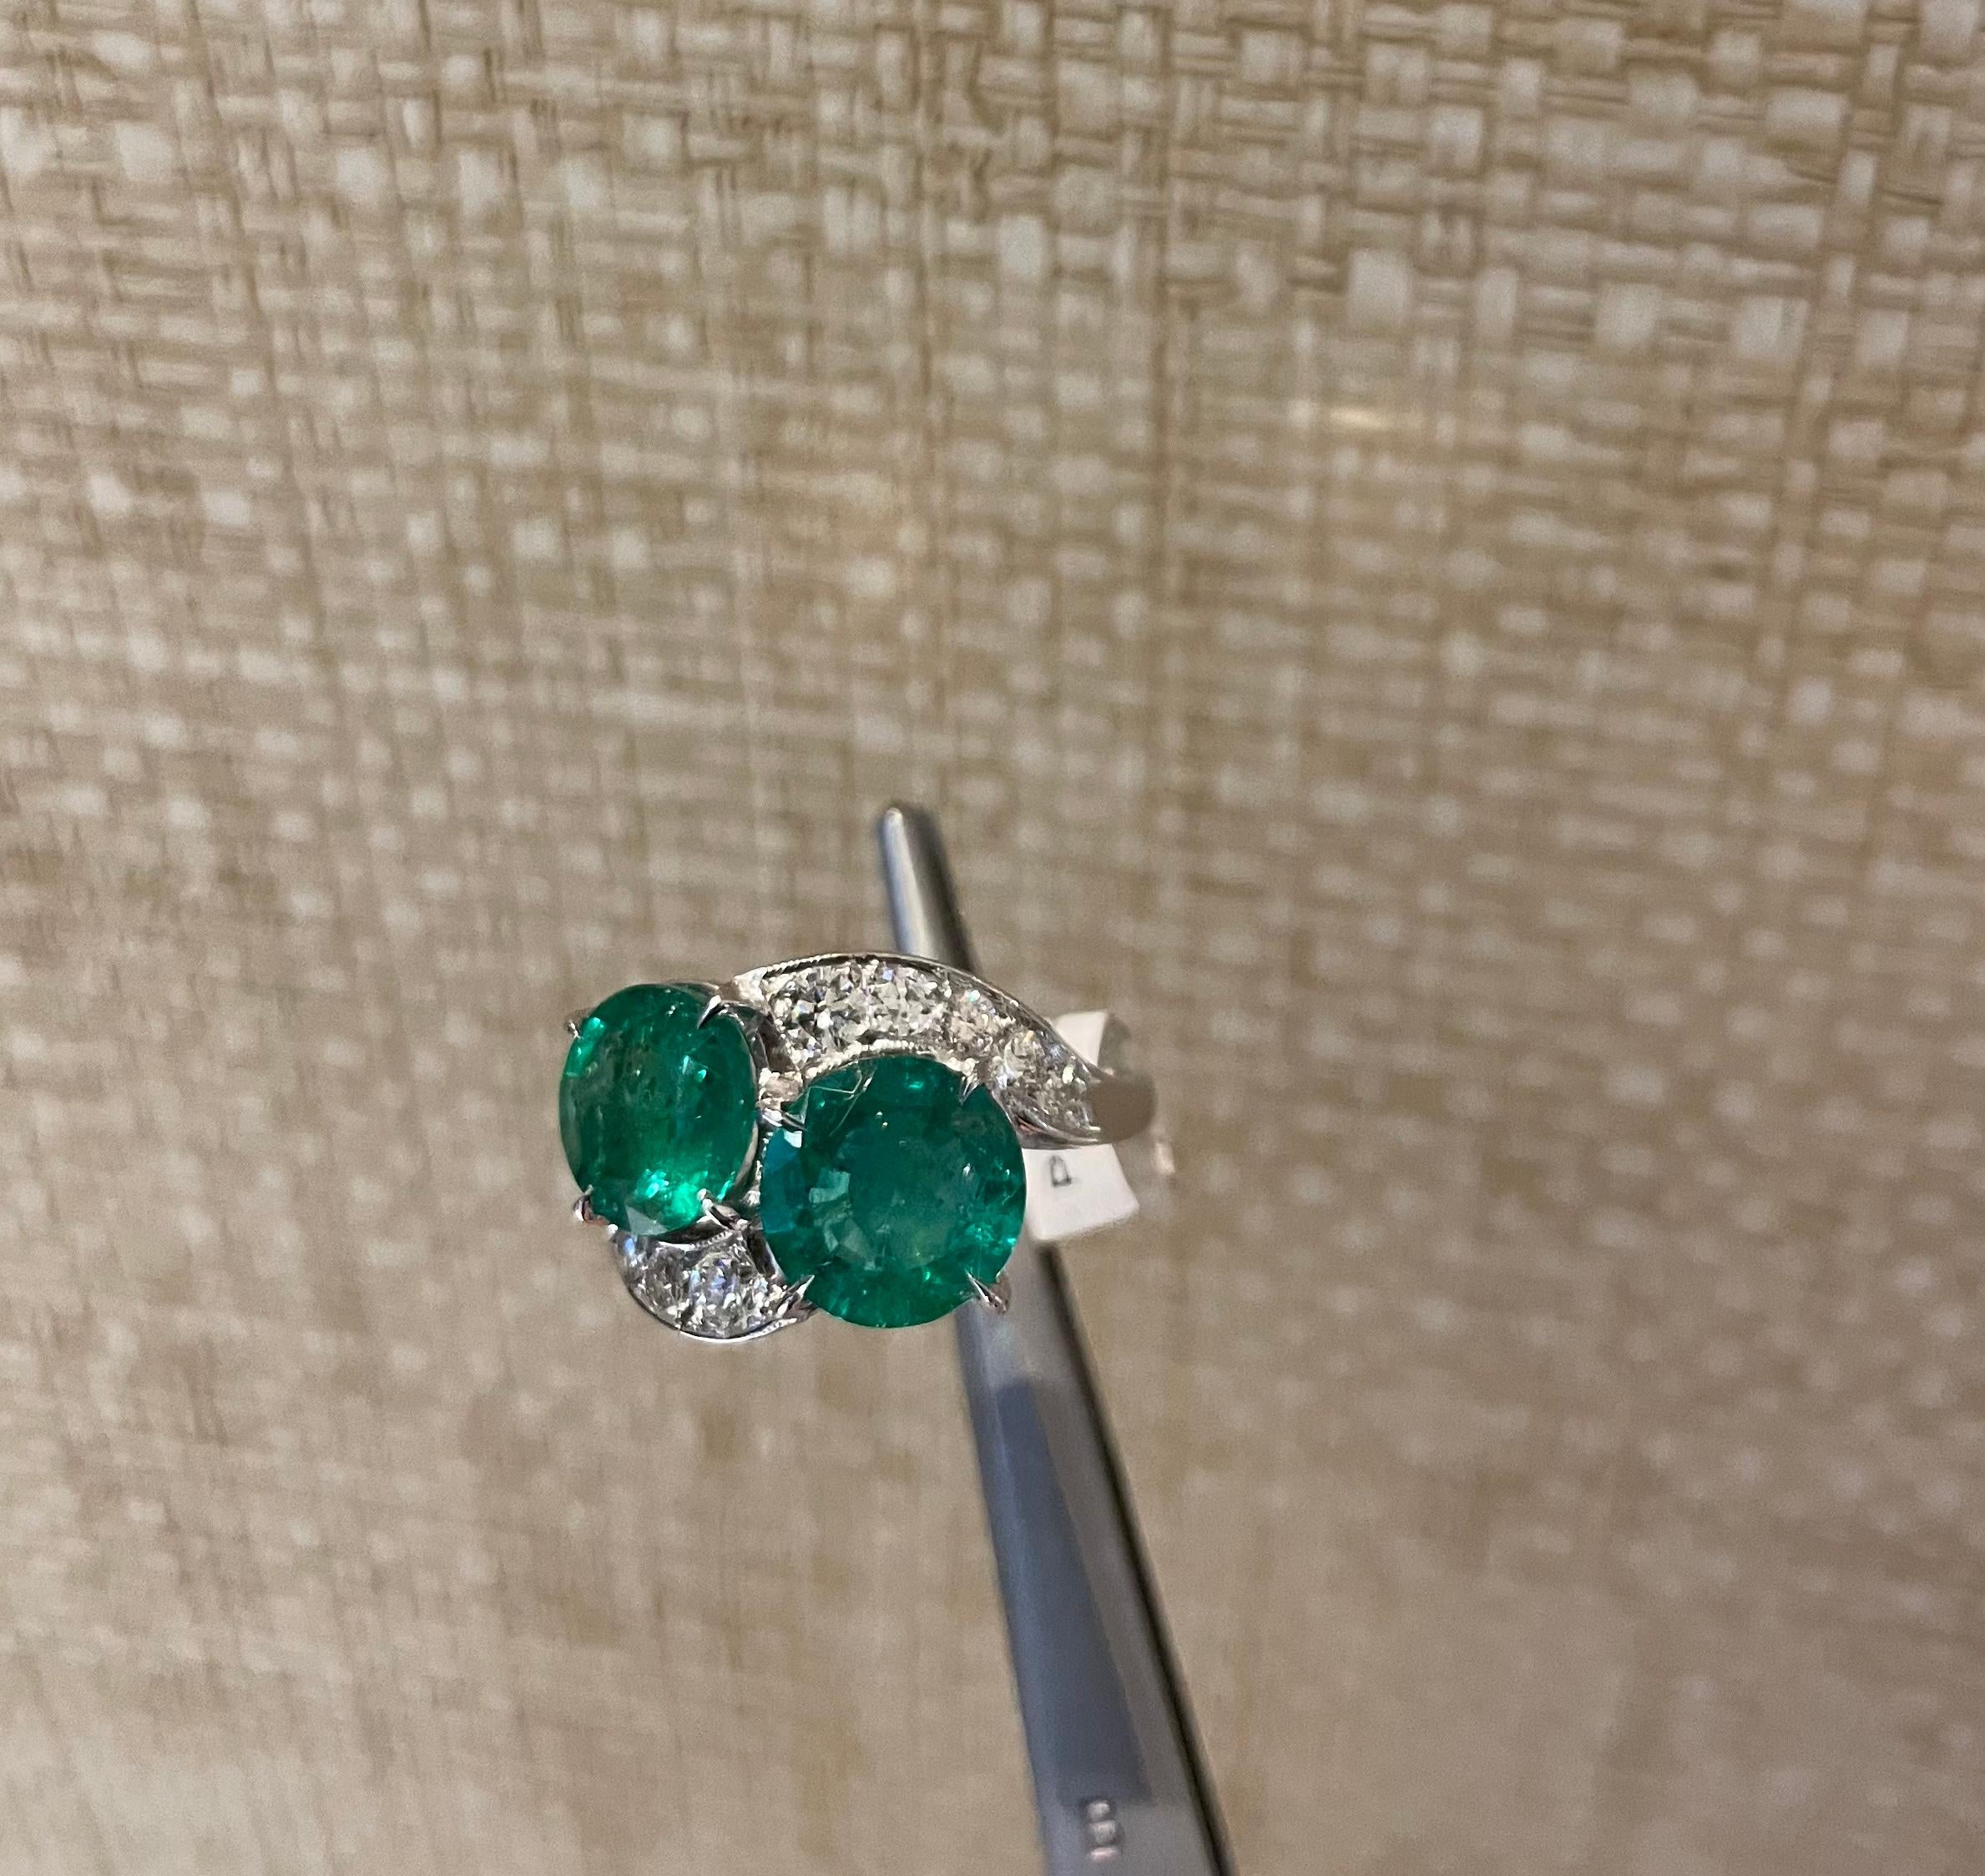 Schöner Smaragd- und Diamantring mit einzigartigem Vintage-Design. Ungefähr 4,5 Karat runde Smaragde und 0,75 Karat runde Brillanten, gefasst in Platin

Größe 6.5